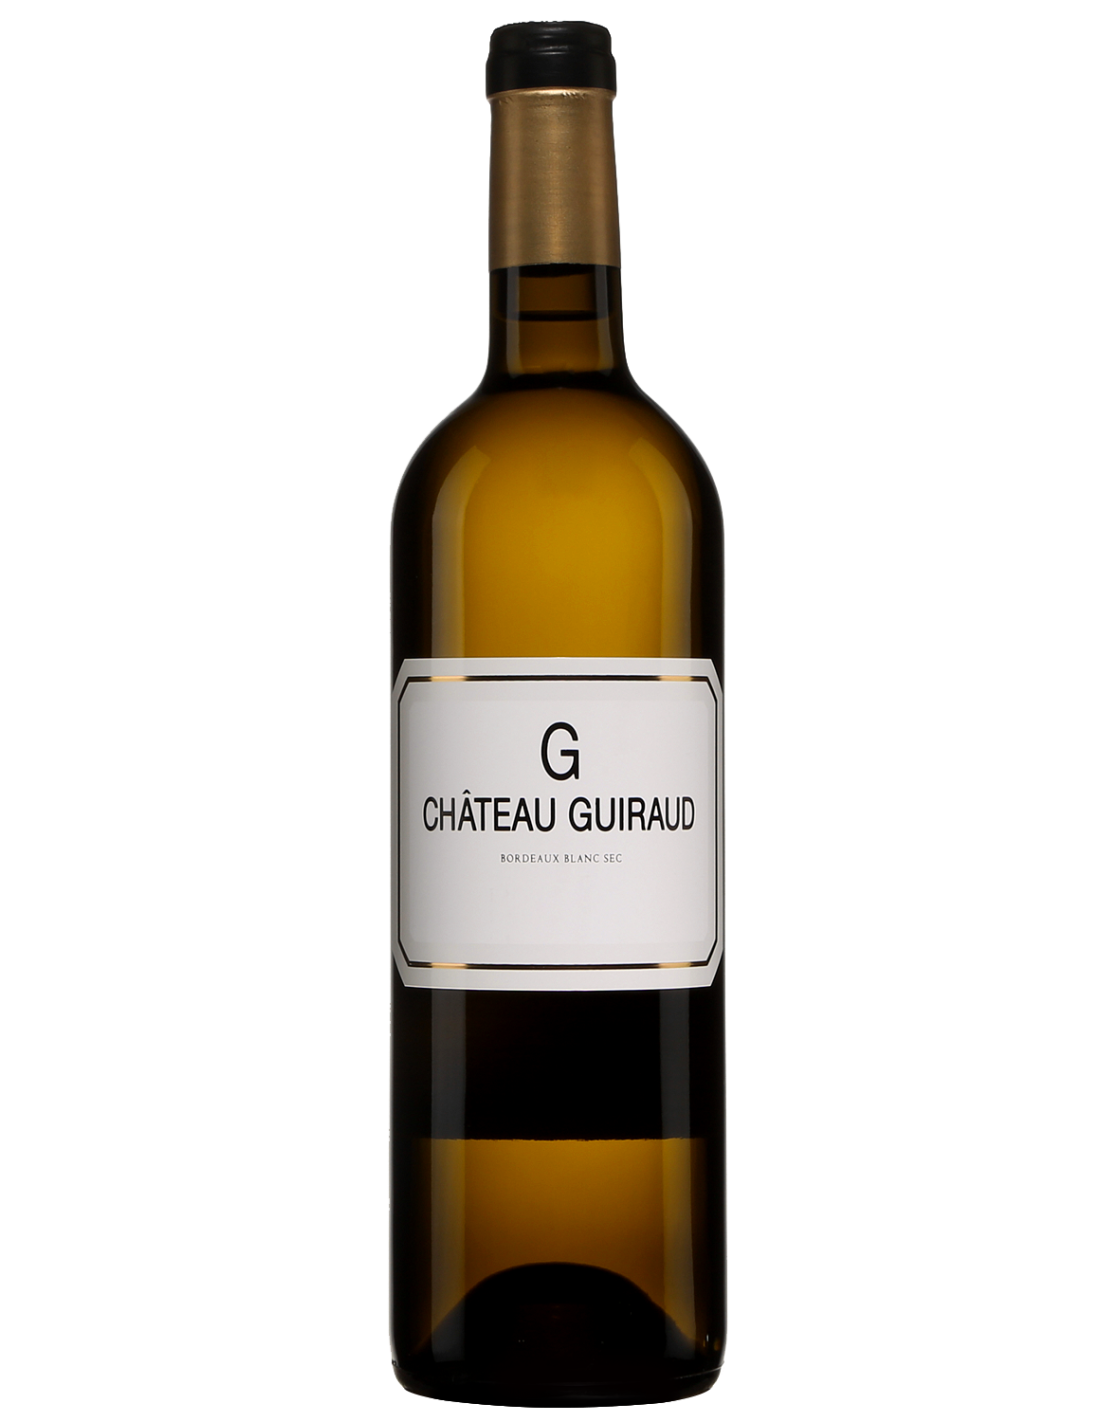 Vin alb sec, Chateau Guiraud Bordeaux, 13.5% alc., 0.75L, Franta